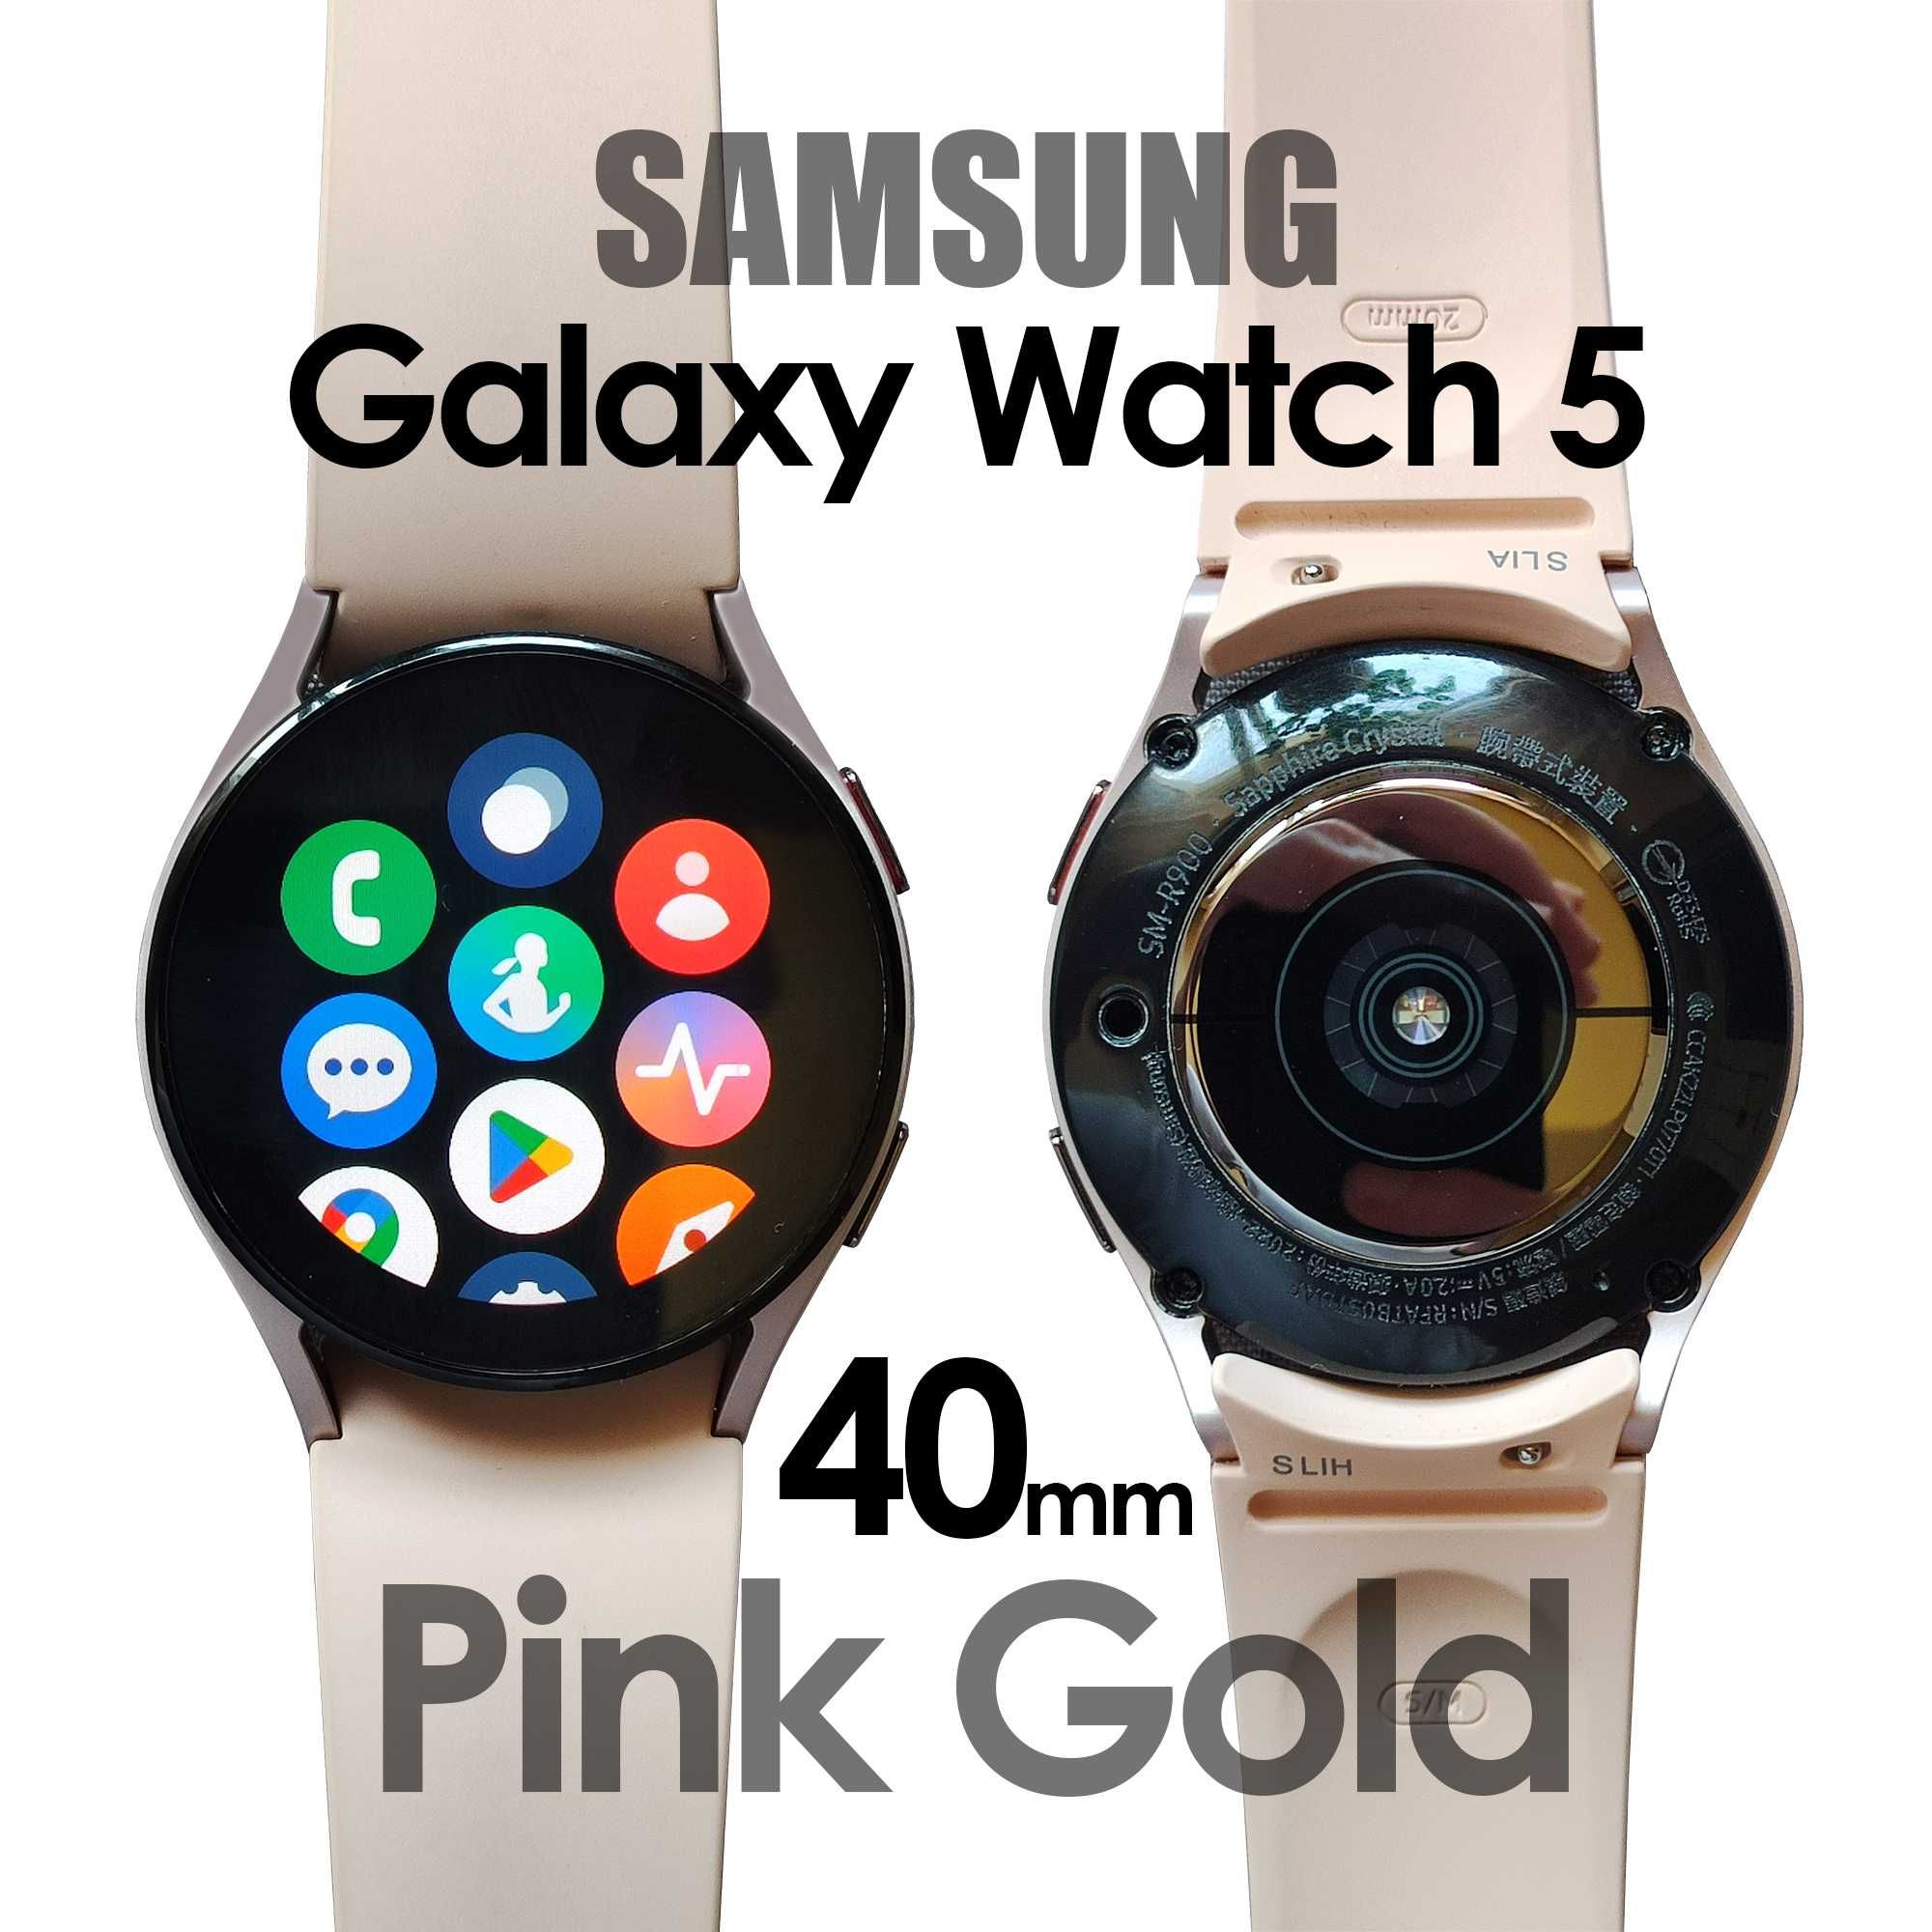 Samsung Galaxy Watch 5 40mm Pink Gold